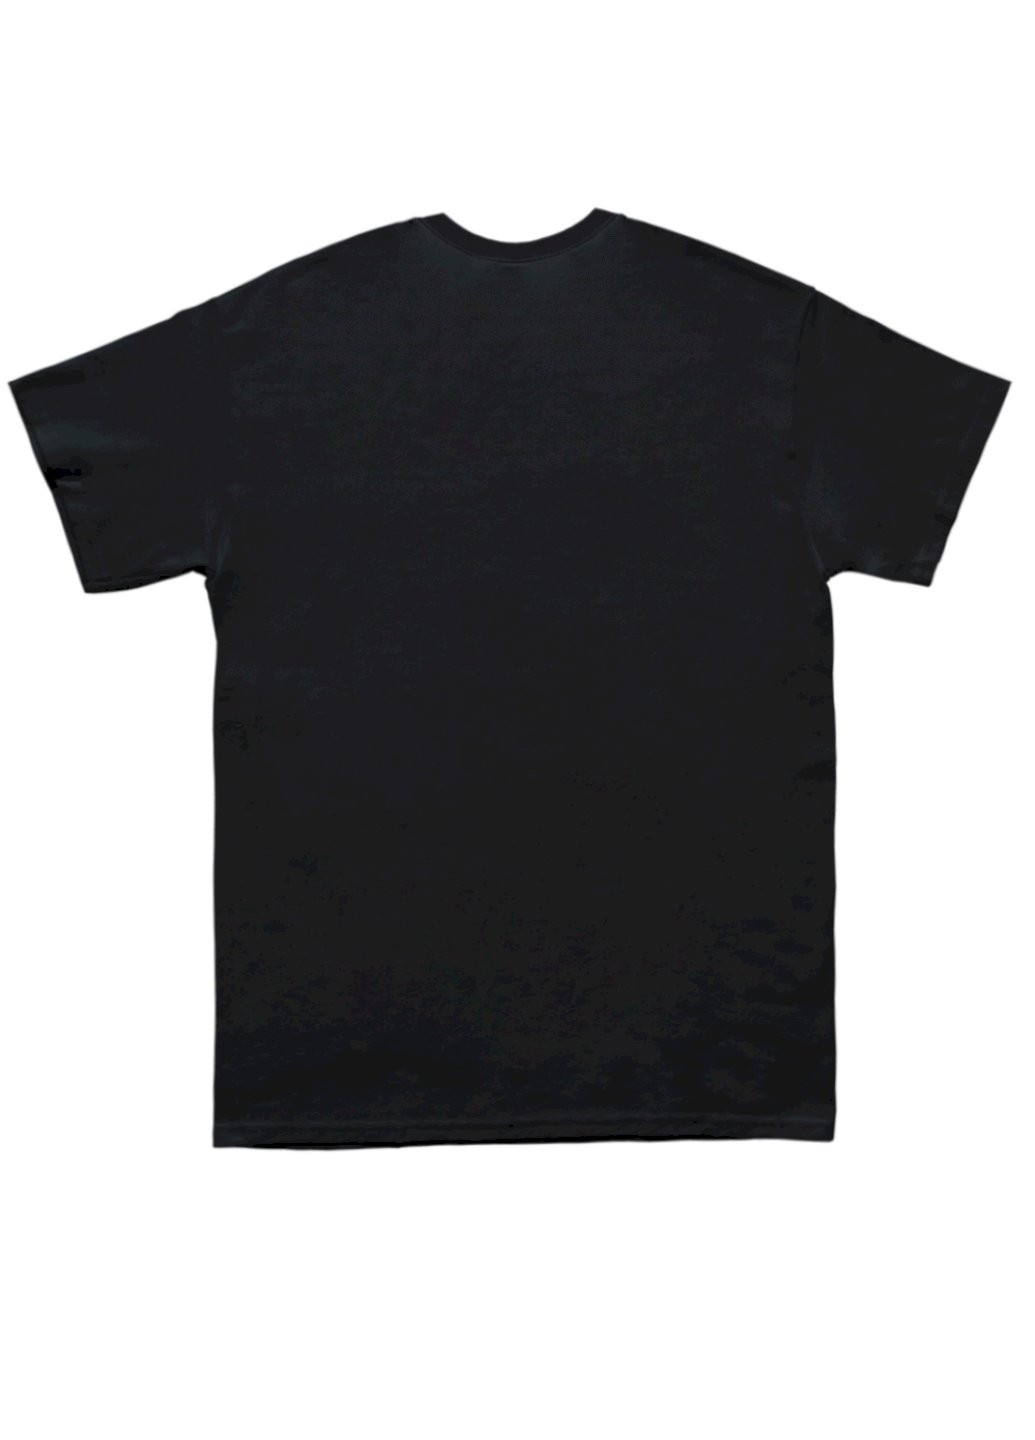 Черная футболка мужская черная "neptune. voyager-2. 1989" Trace of Space